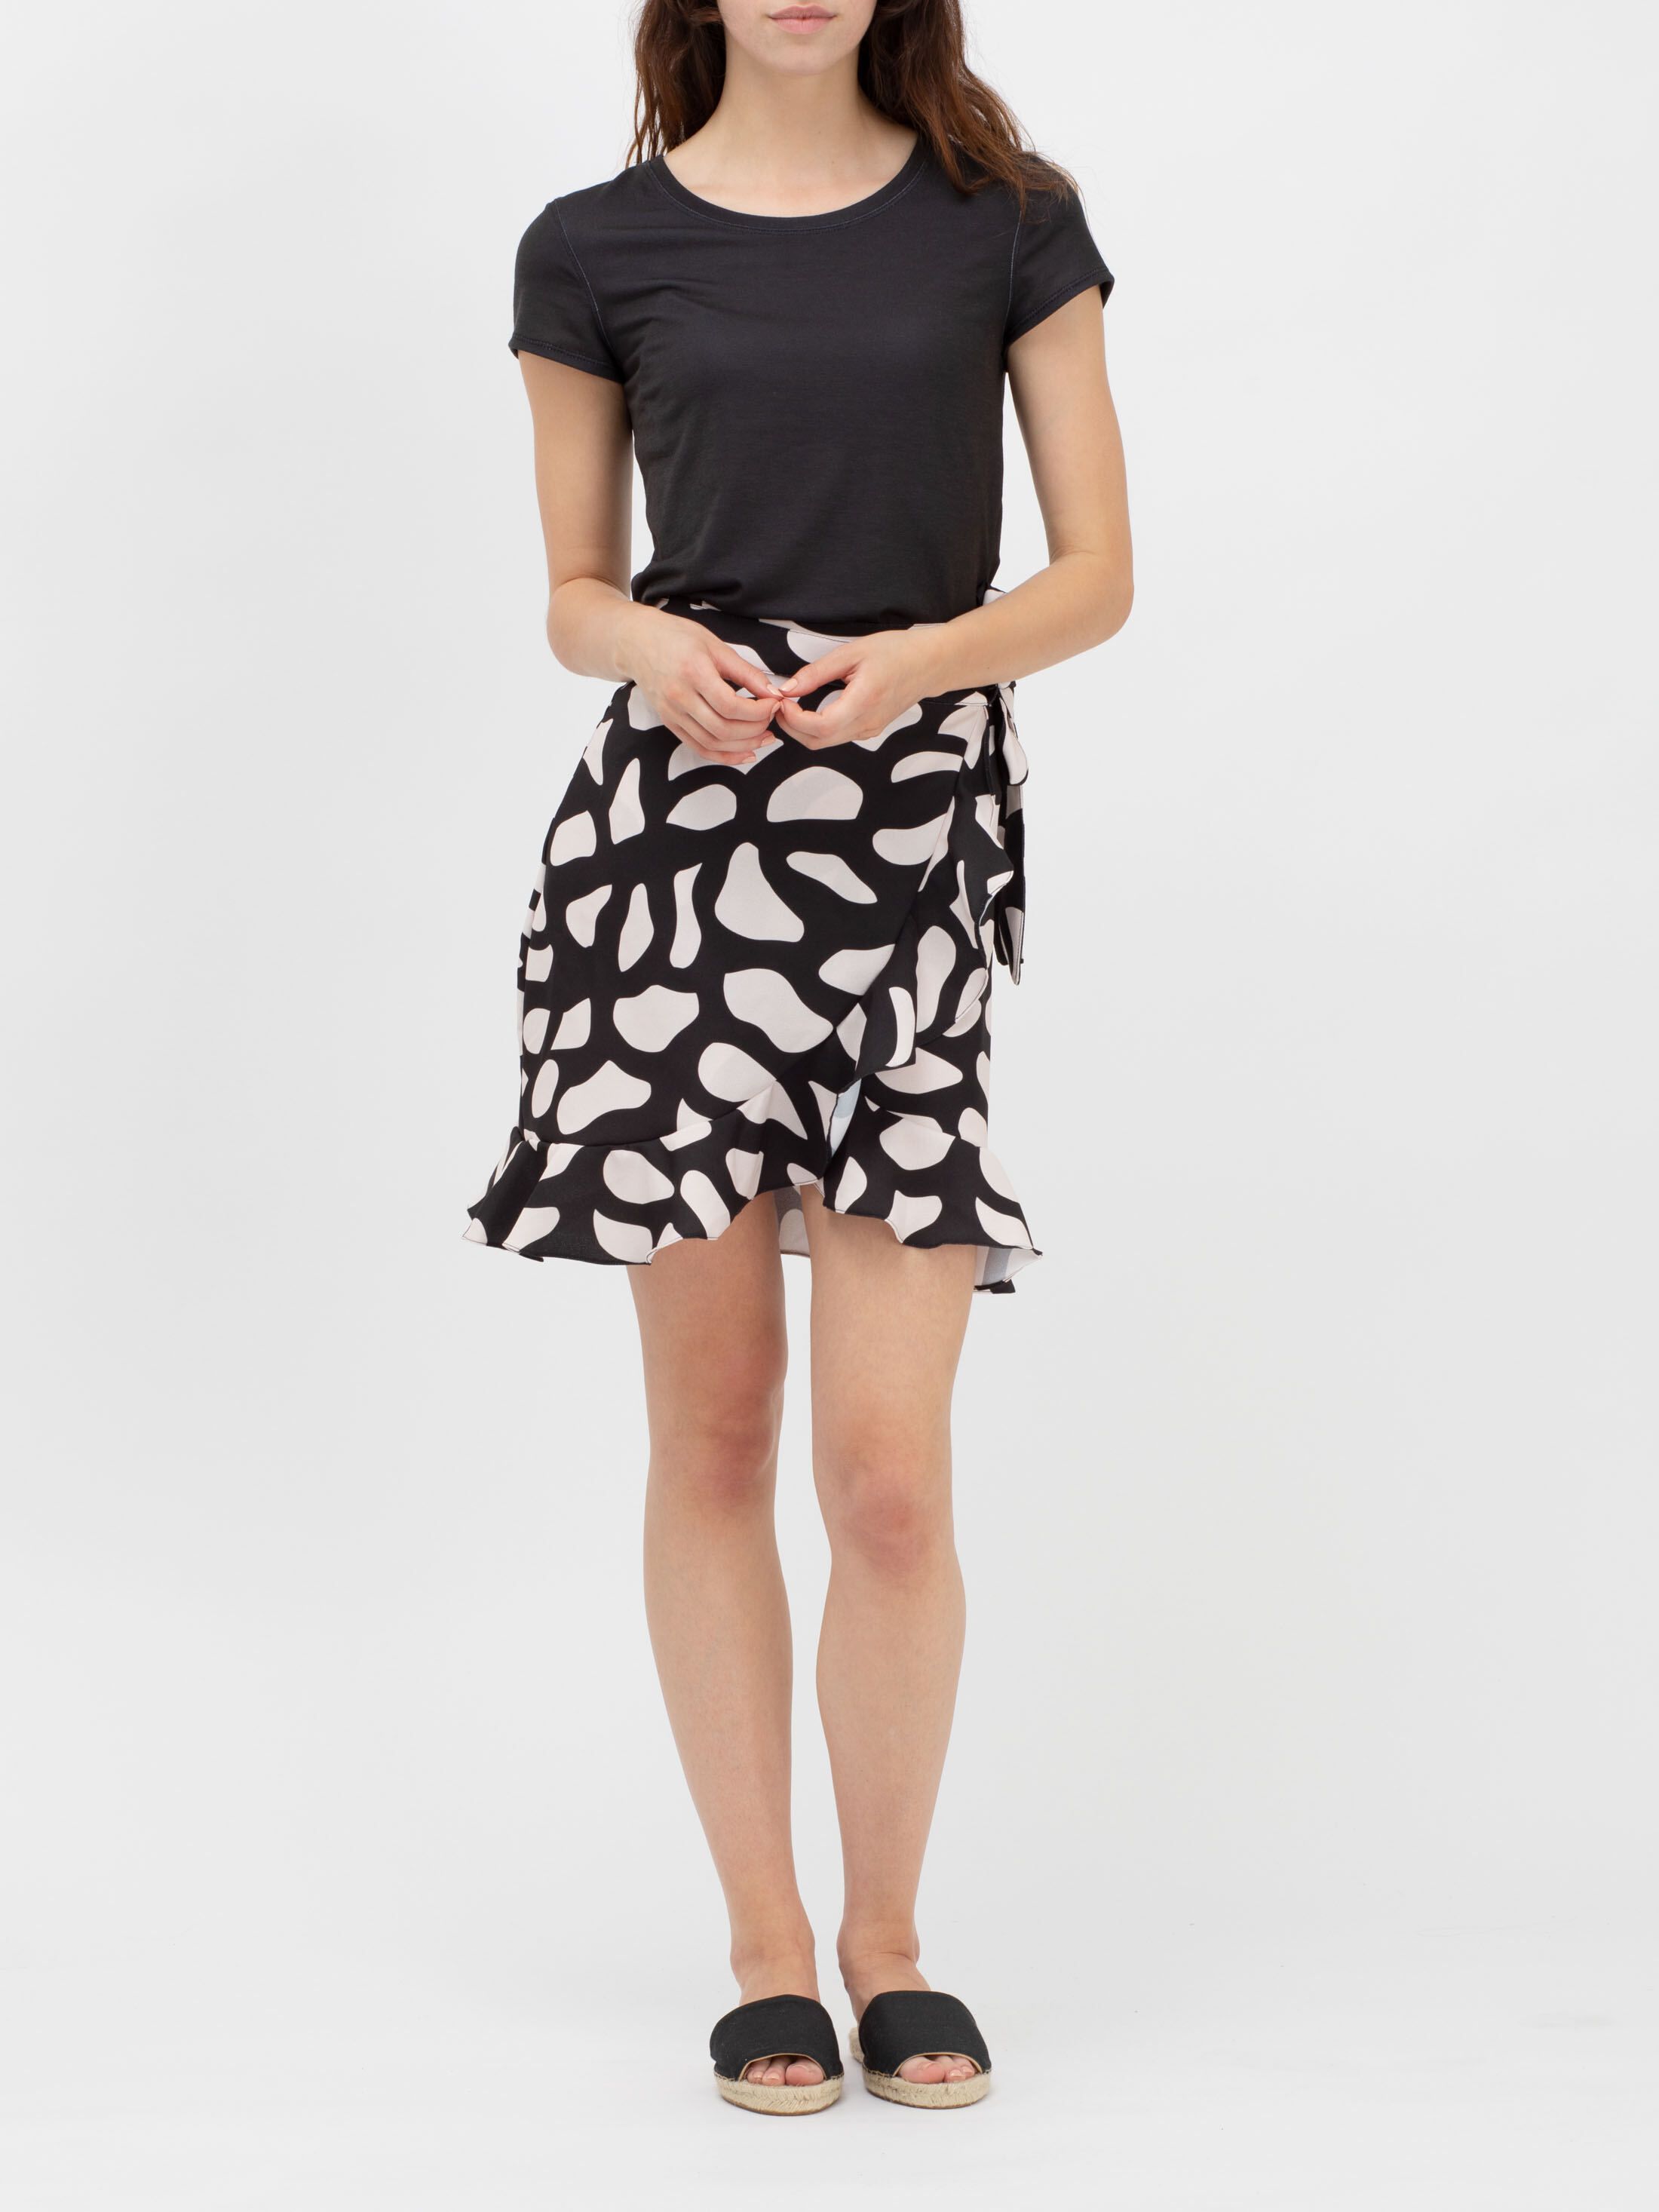 custom printed flouncy skirt